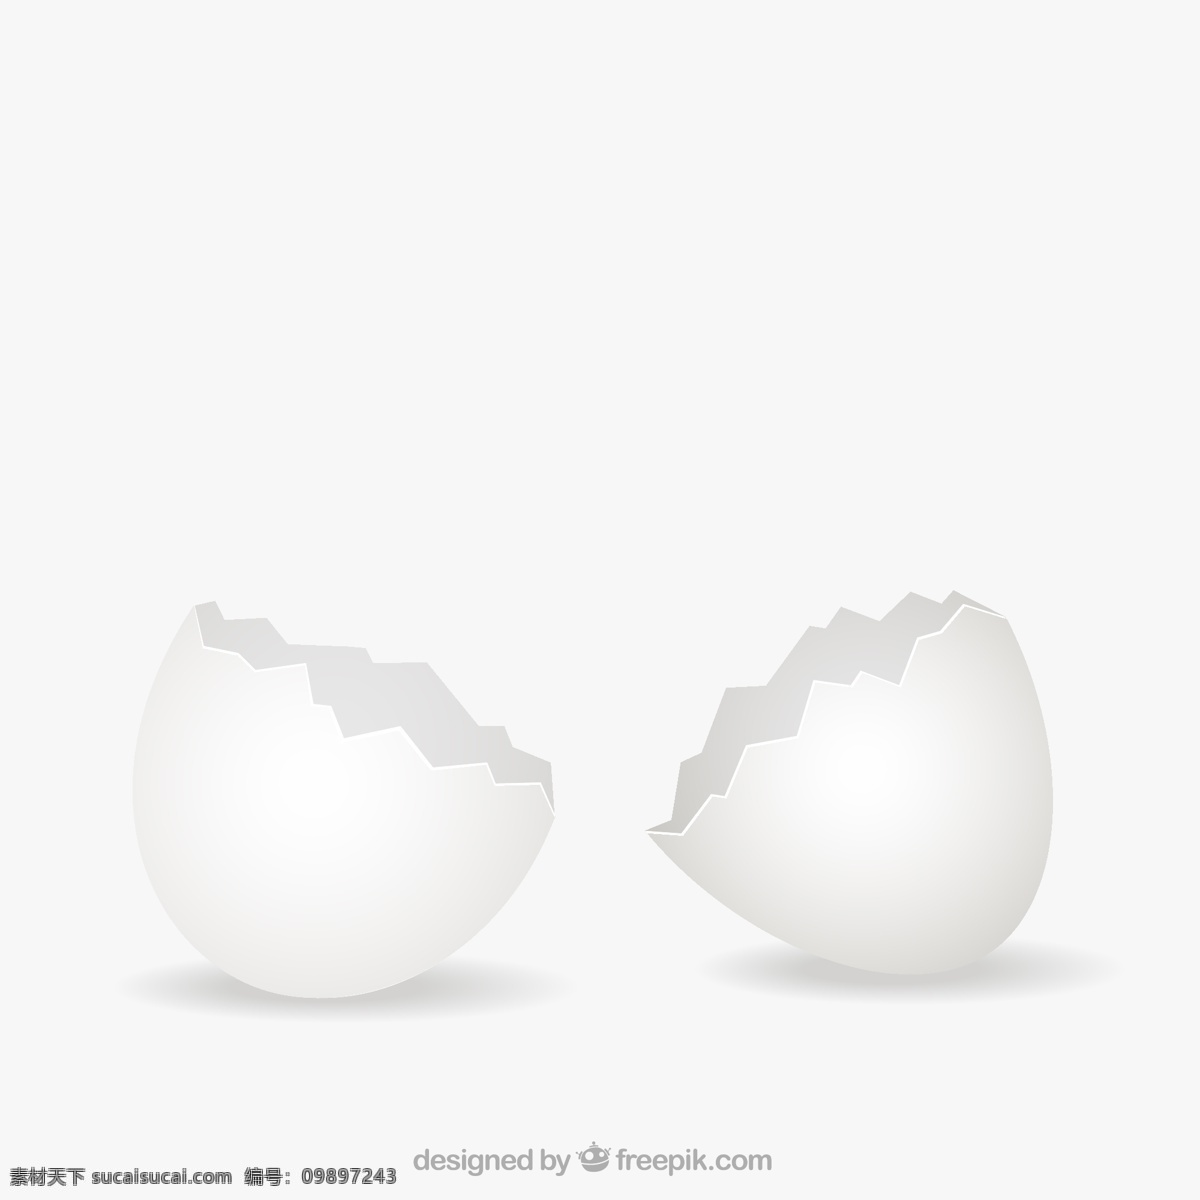 破碎 鸡蛋 壳 矢量 鸡蛋壳 蛋壳 裂开 插画 背景 海报 画册 生活百科